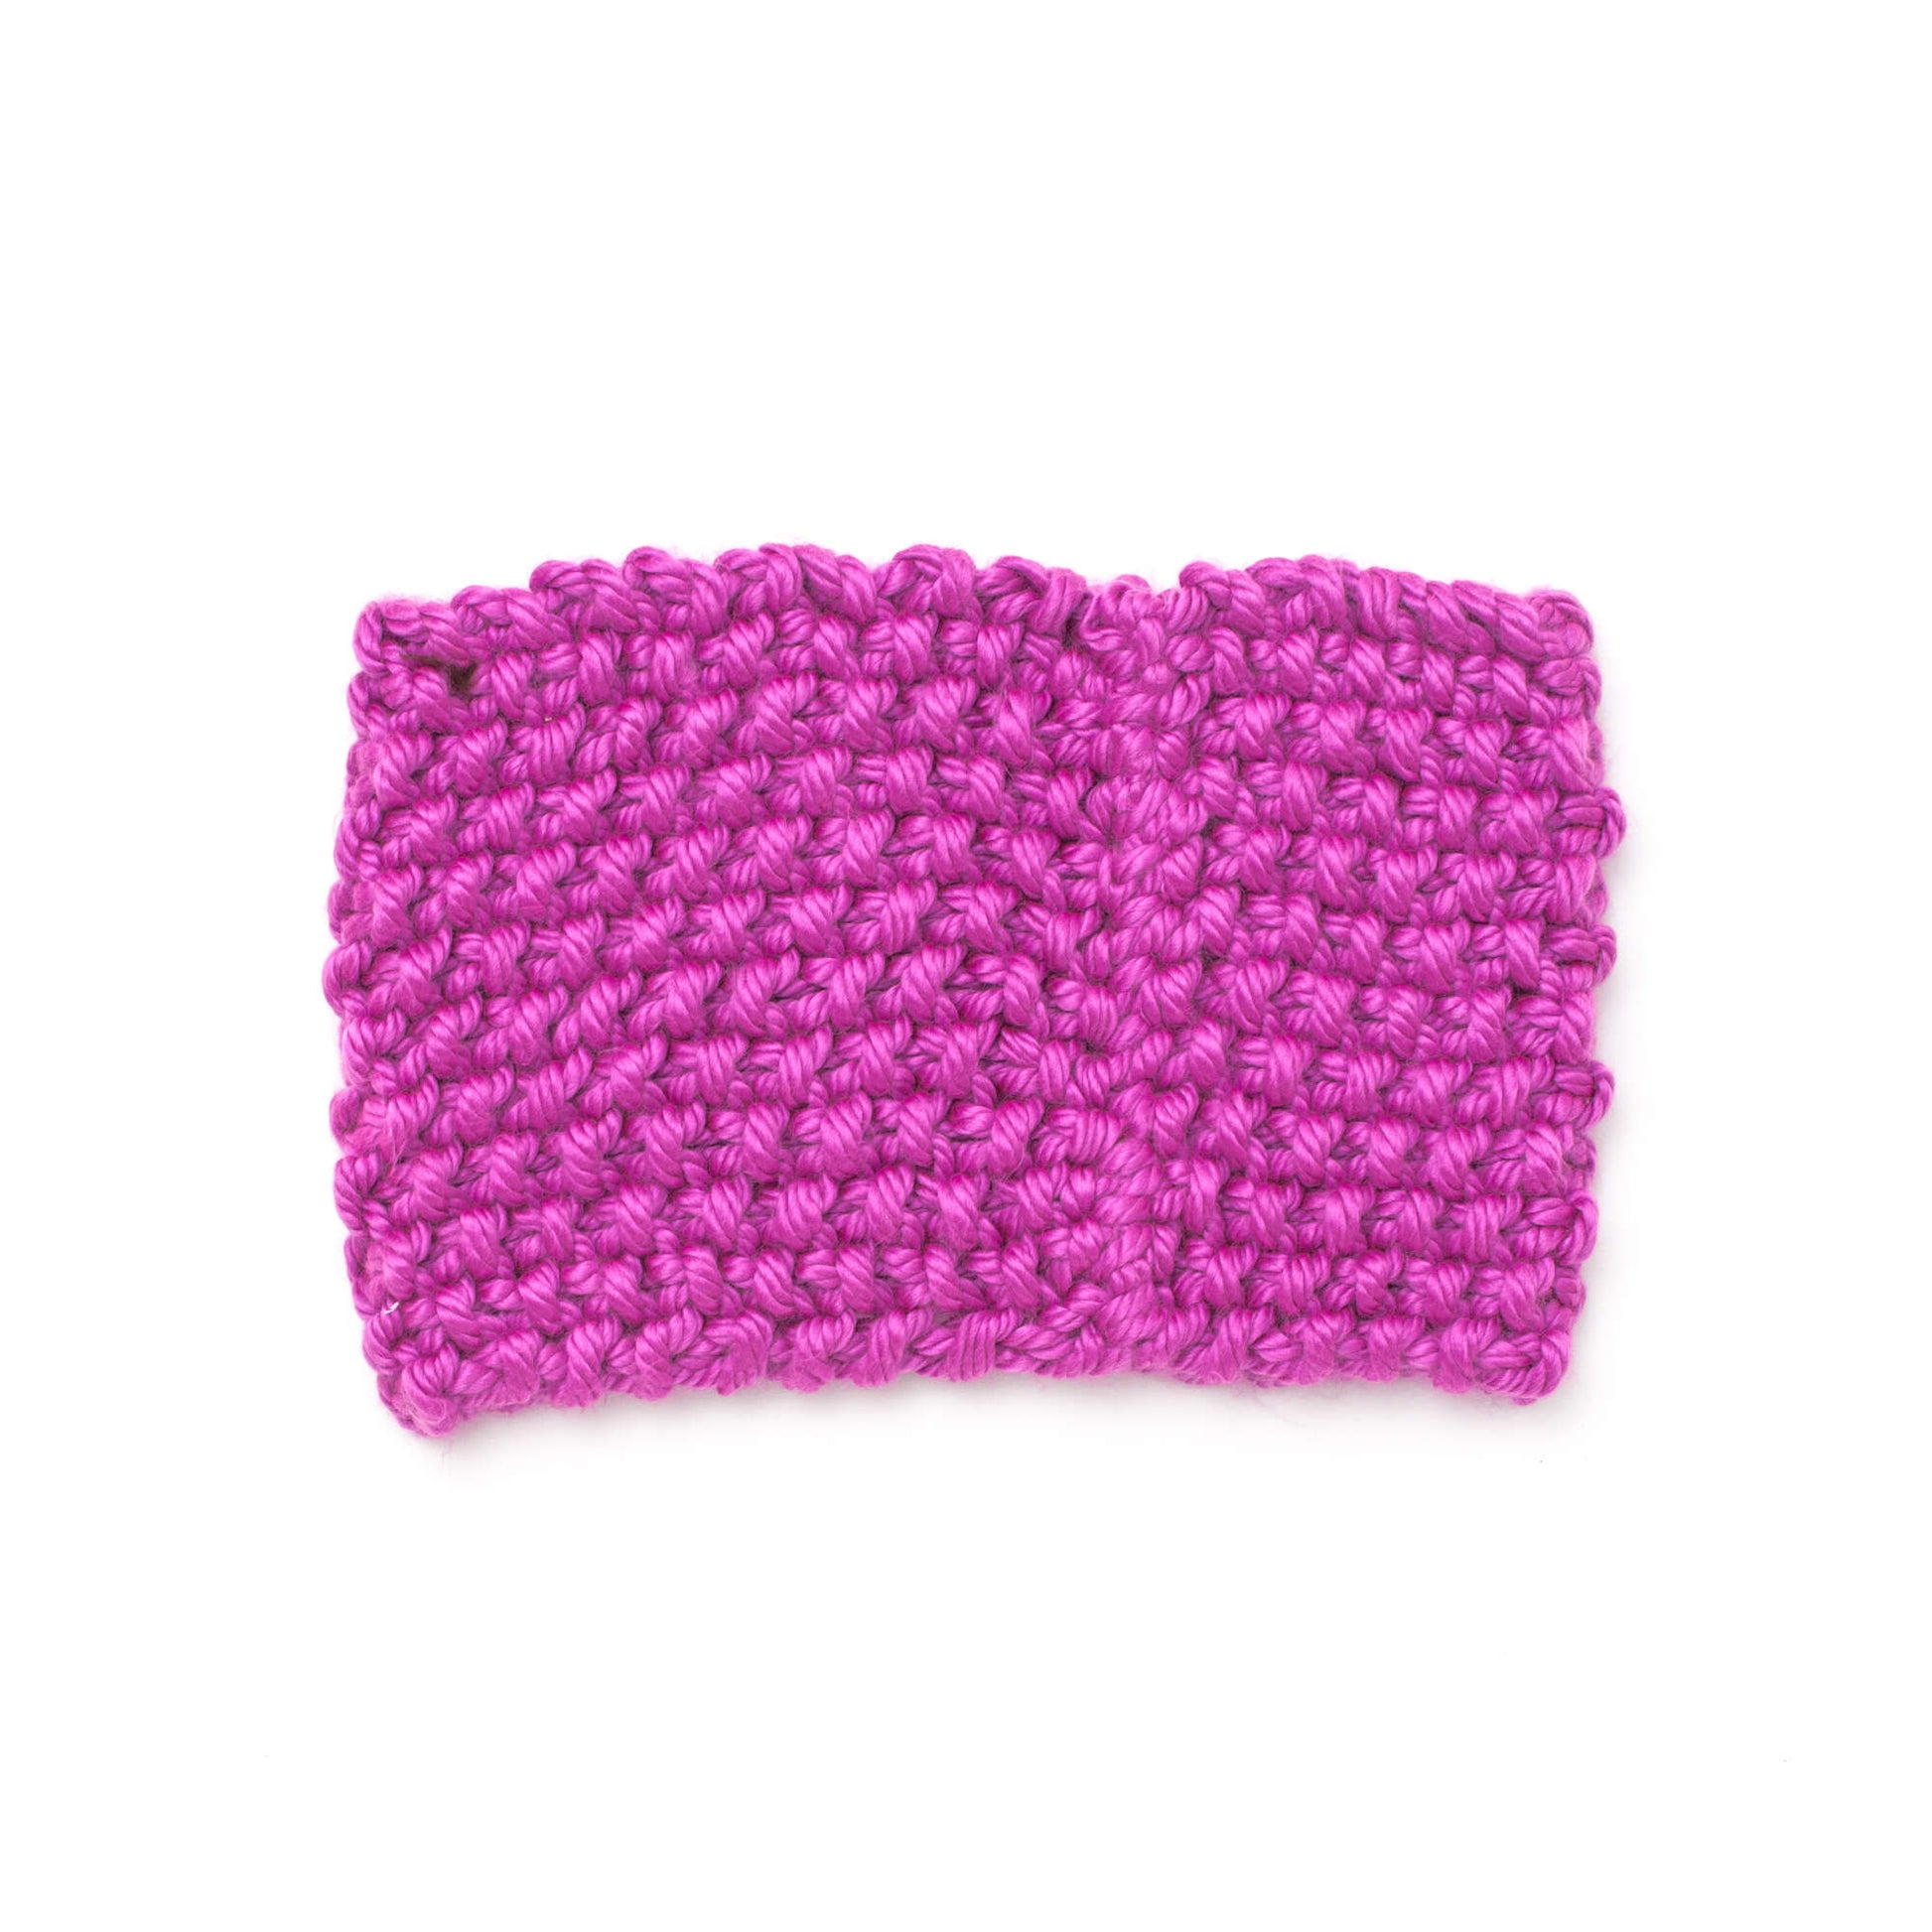 Free Bernat Super Size Seed Stitch Cowl Knit Pattern